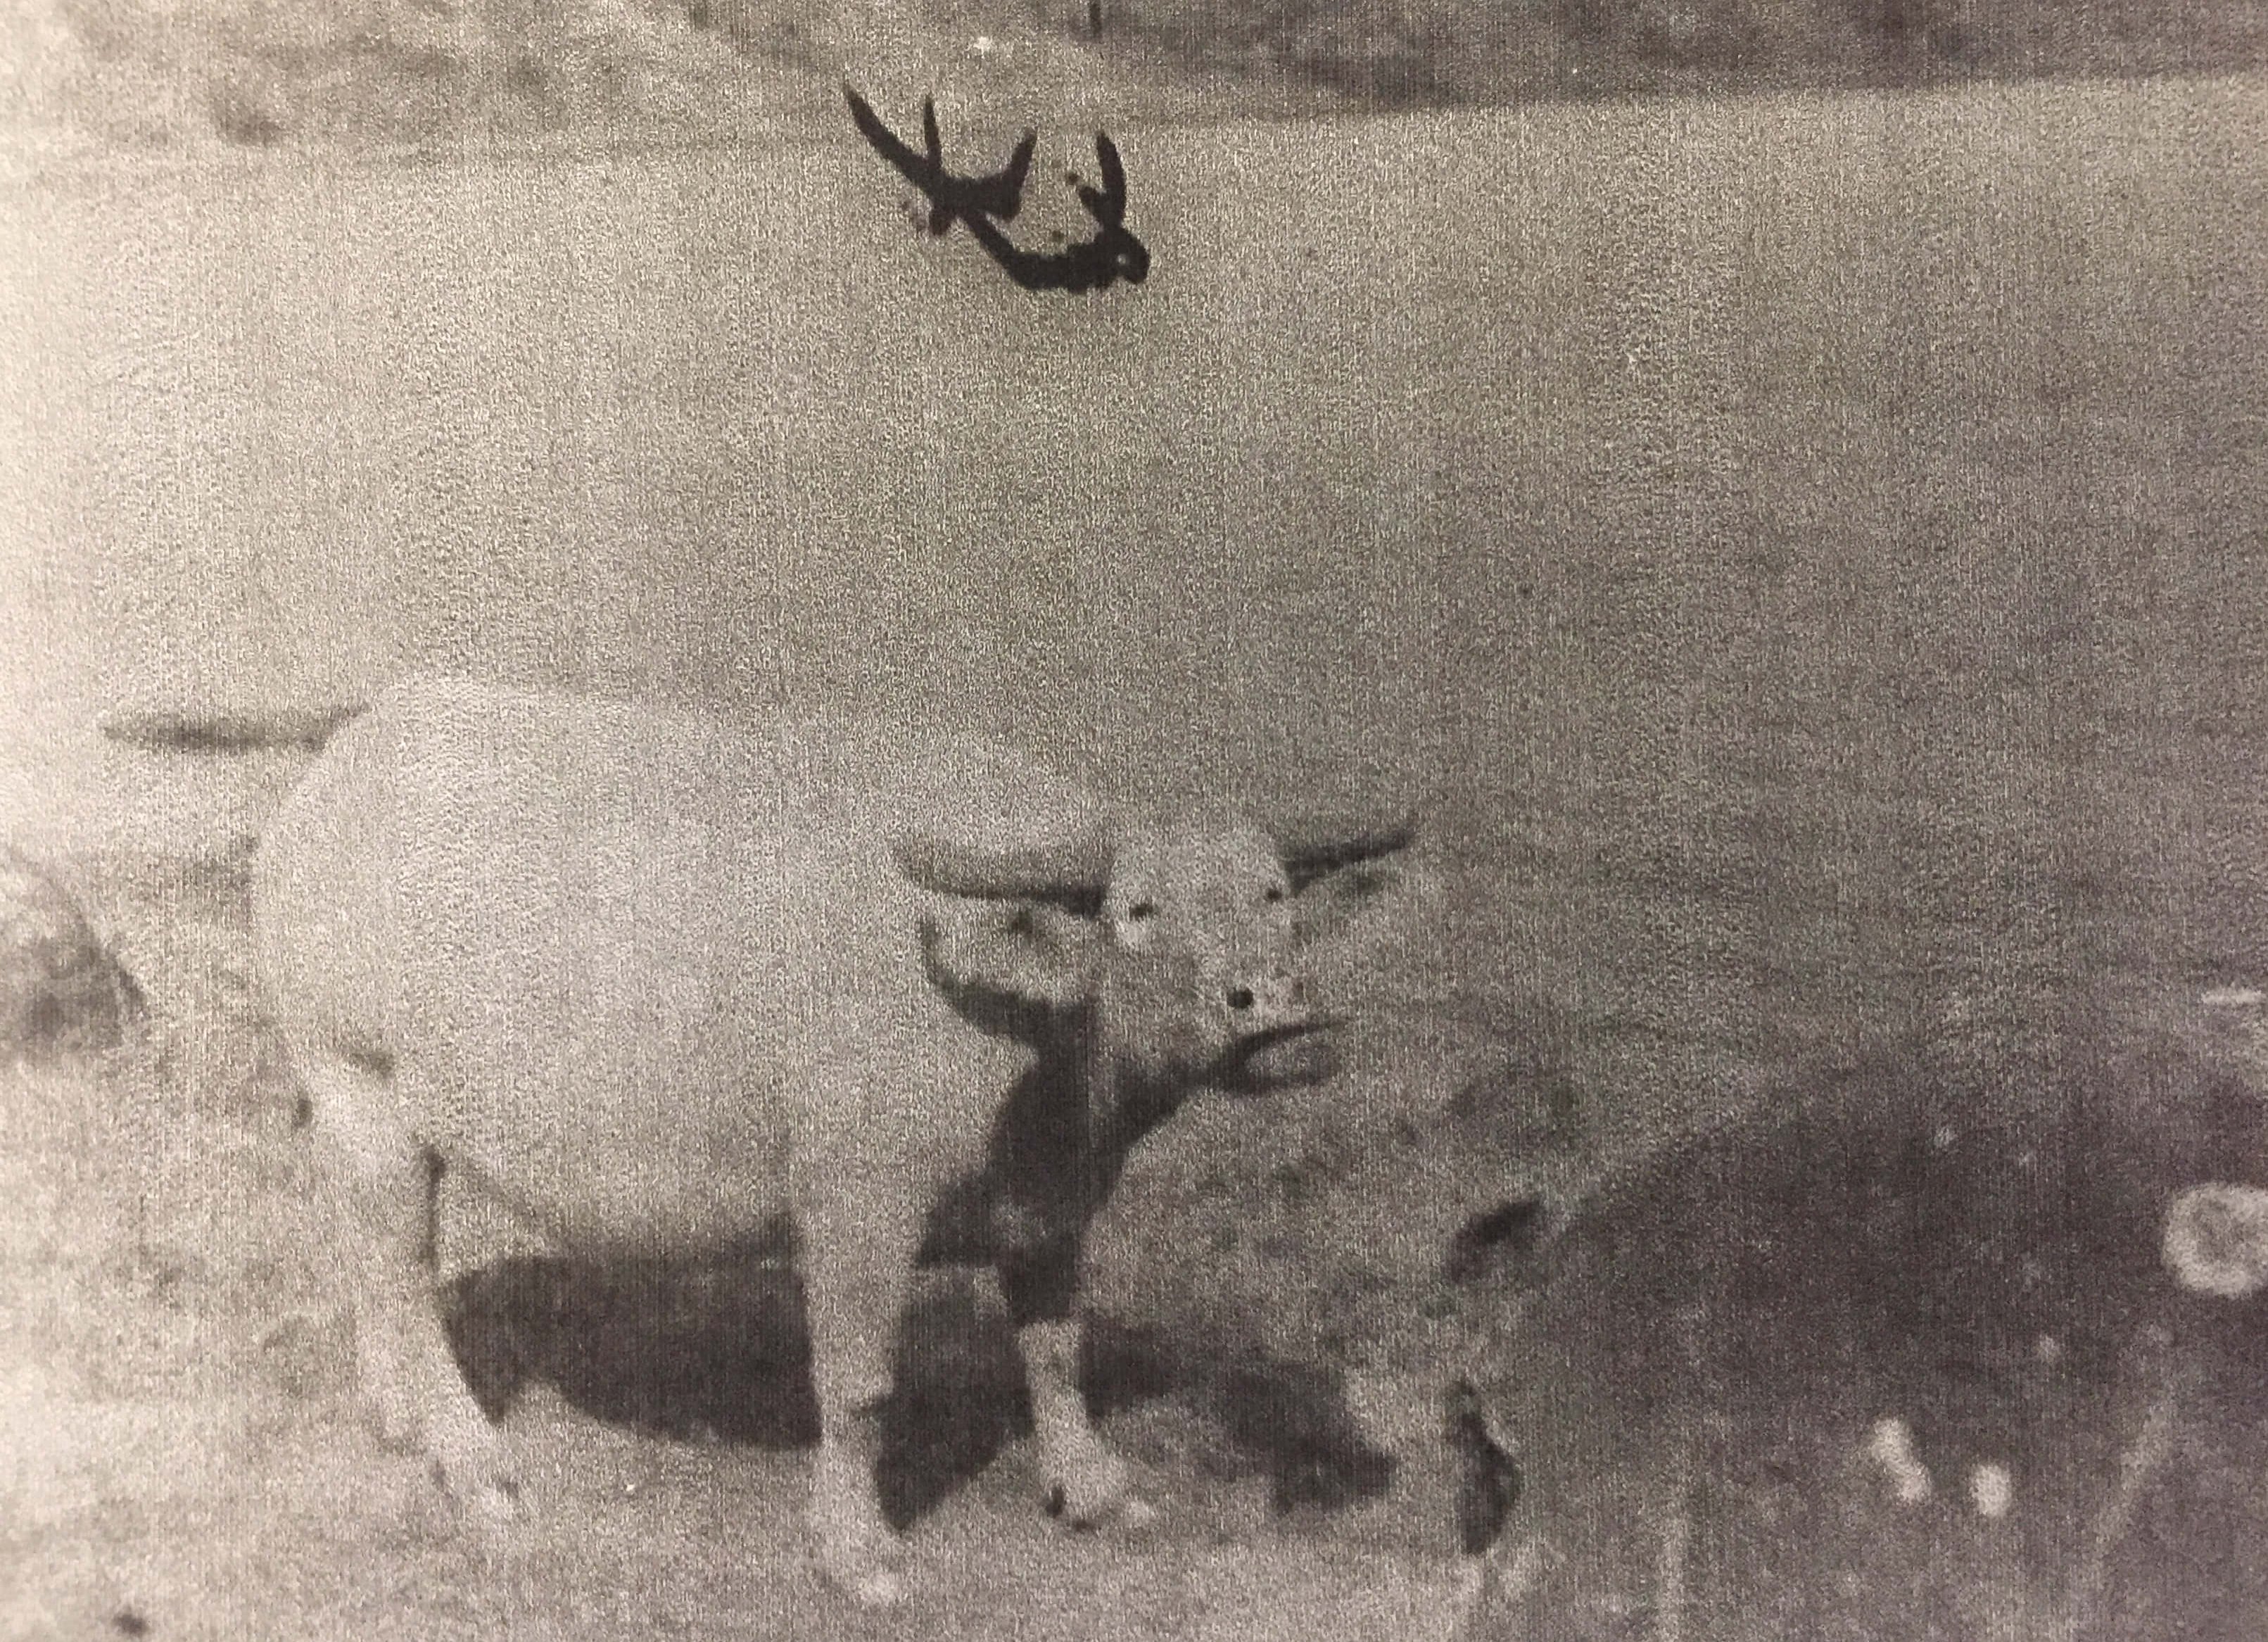 Water buffalo at a lake.